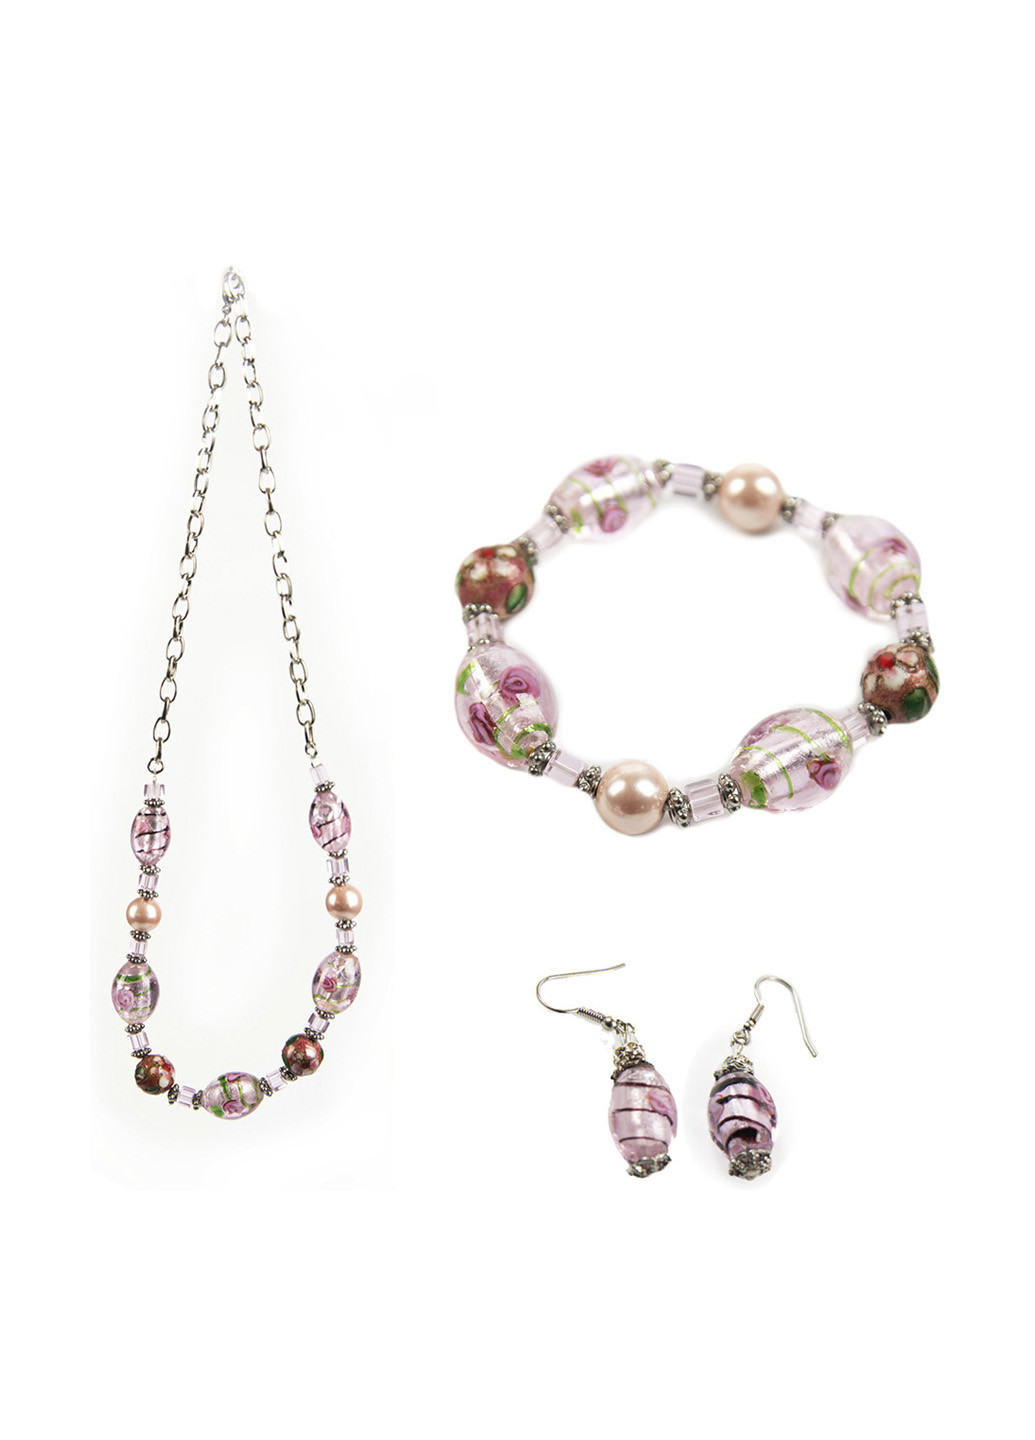 Комплект украшений (ожерелье, браслет, серьги) Penny комбинированные